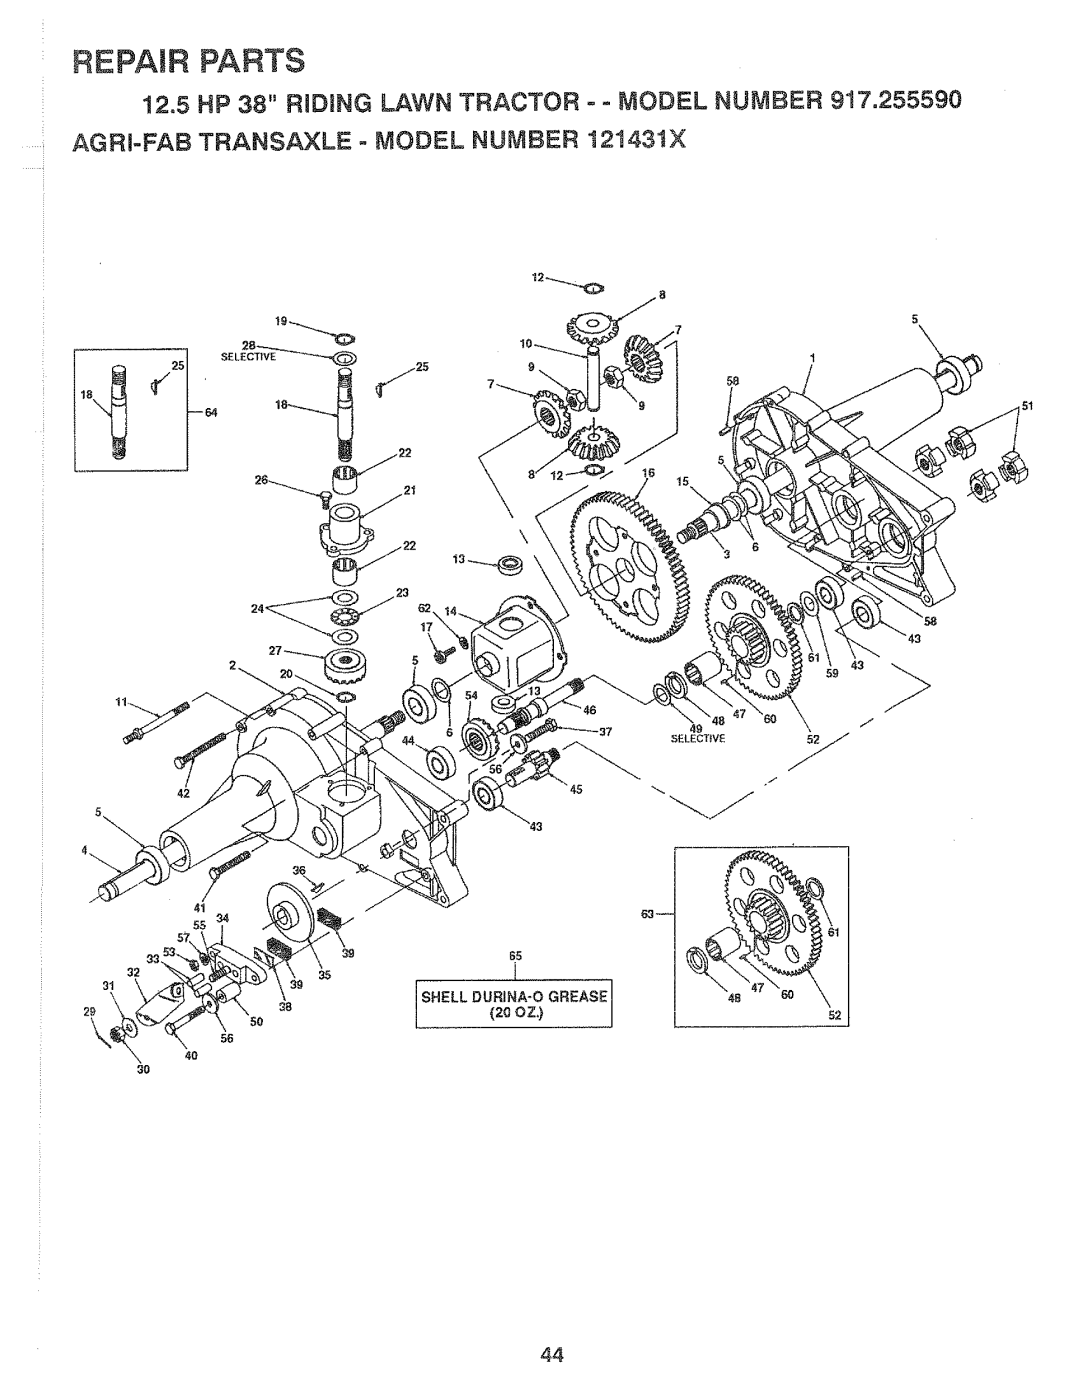 Sears 917.25559 manual Repair Parts, Selective 